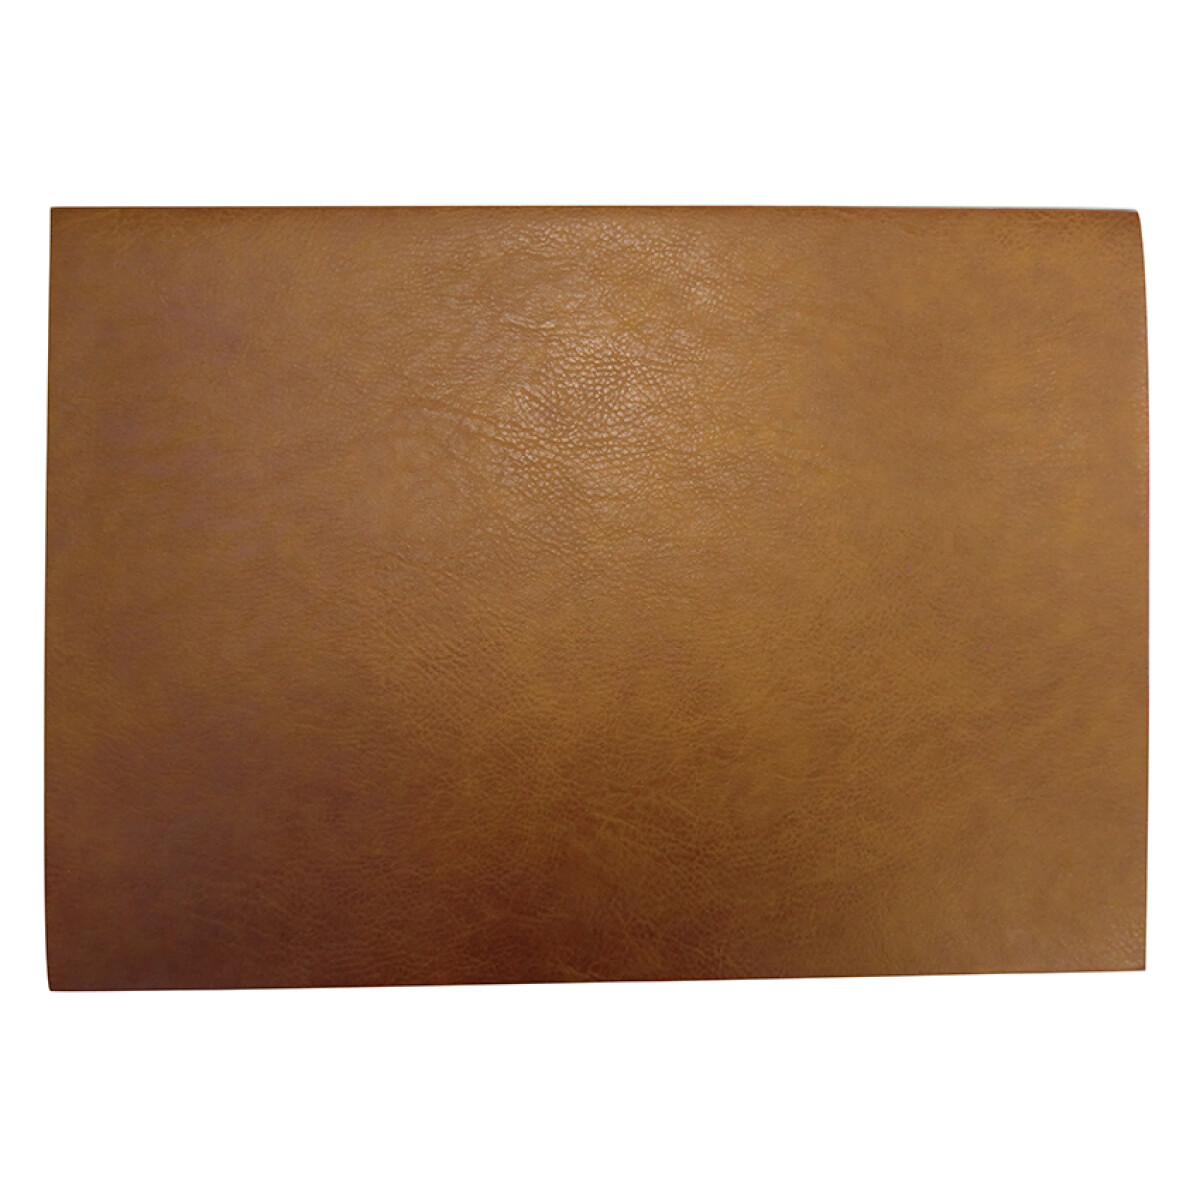 Individual Simil Cuero Laminado 30 x 45 cm - Varios Colores - CHOCOLATE 